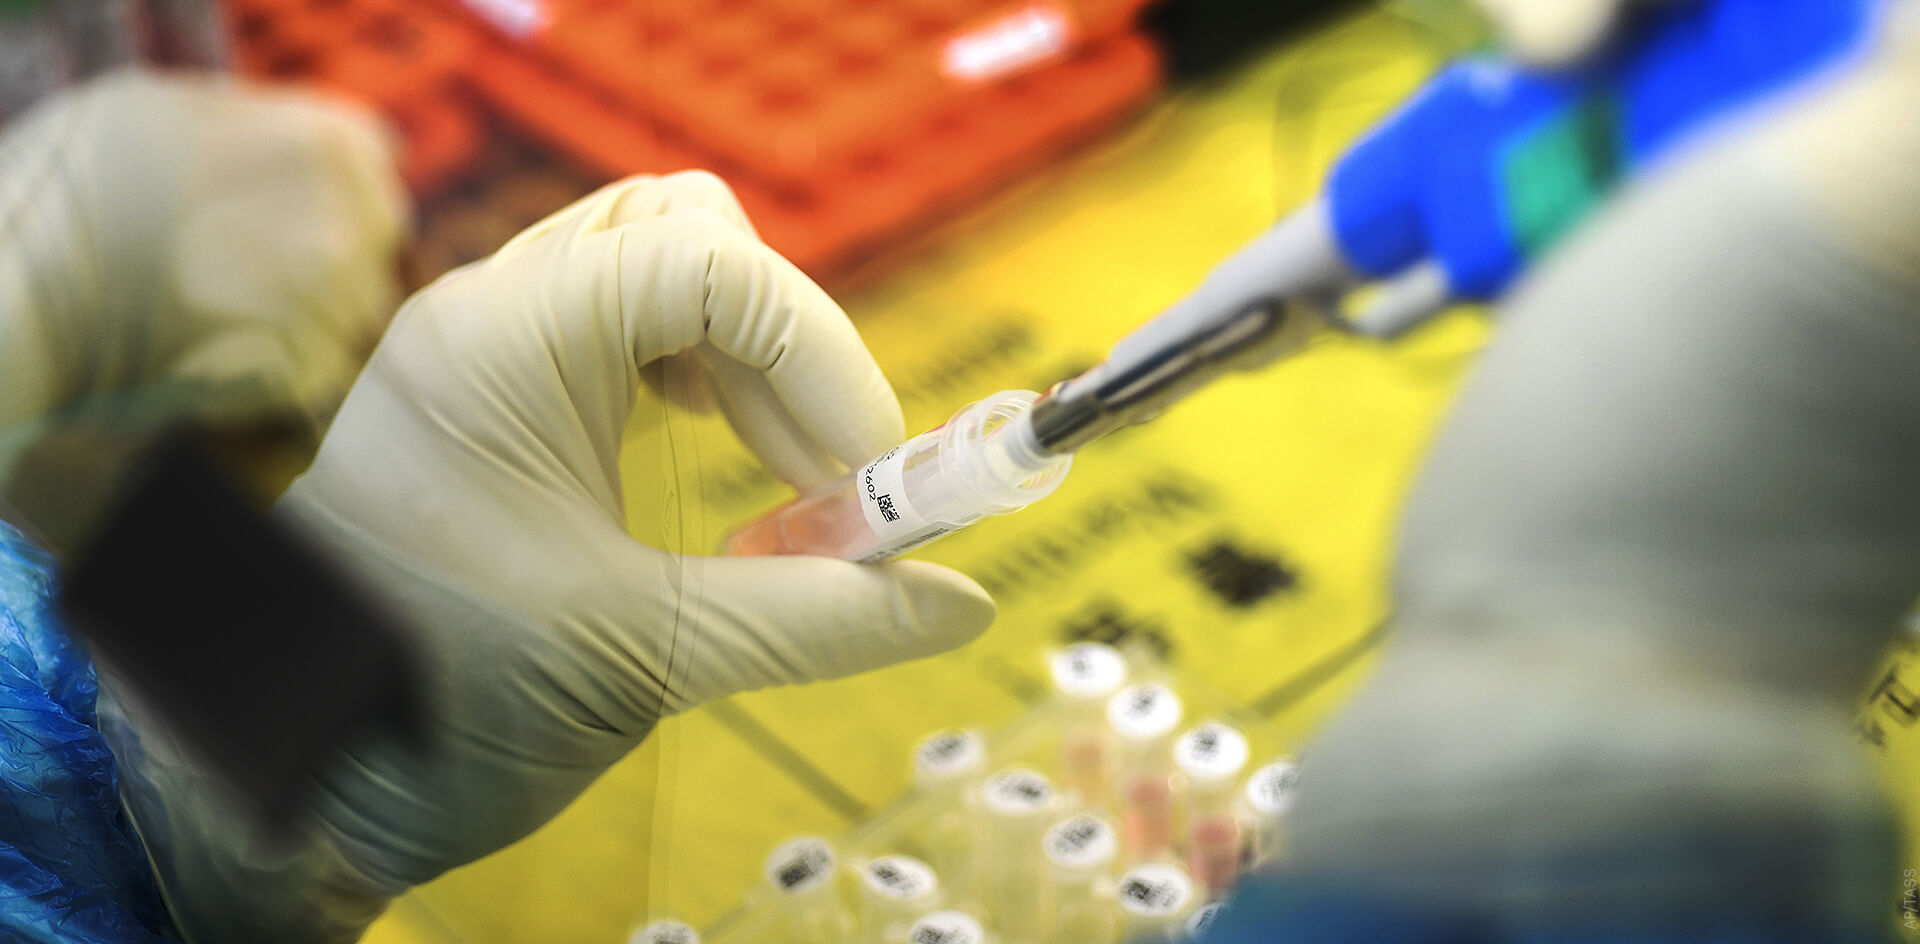 Европа и США обвиняют Китай в пандемии коронавируса